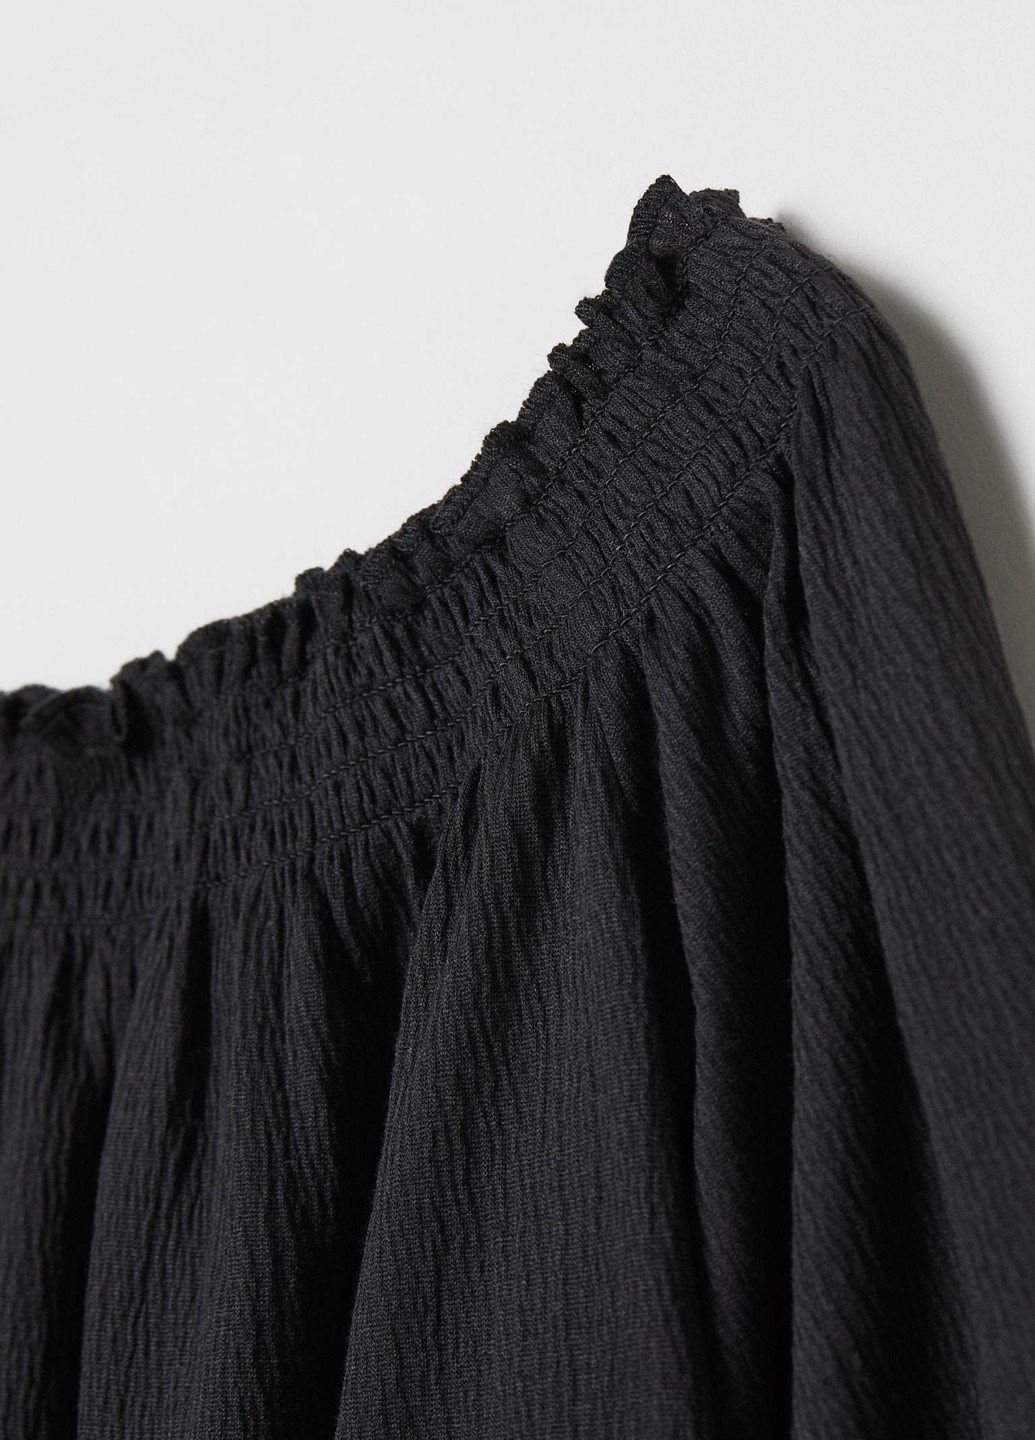 Черная летняя блузка с открытыми плечами H&M